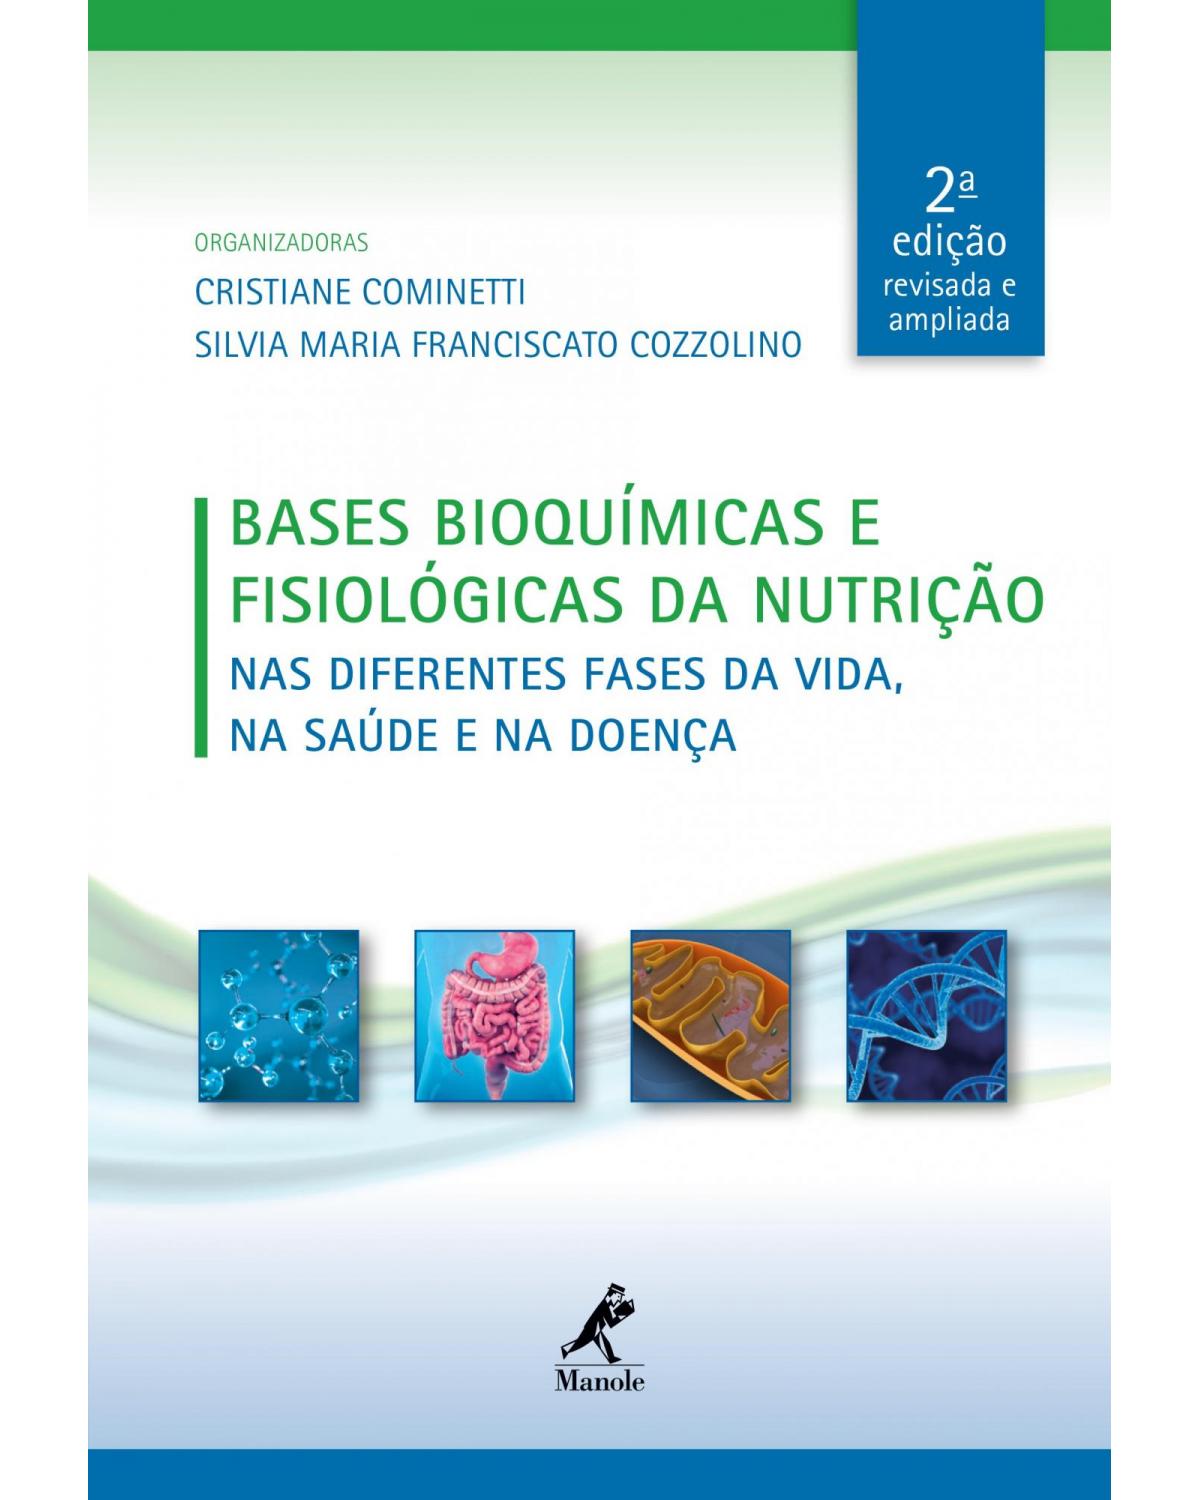 Bases bioquímicas e fisiológicas da nutrição - nas diferentes fases da vida, na saúde e na doença - 2ª Edição | 2019